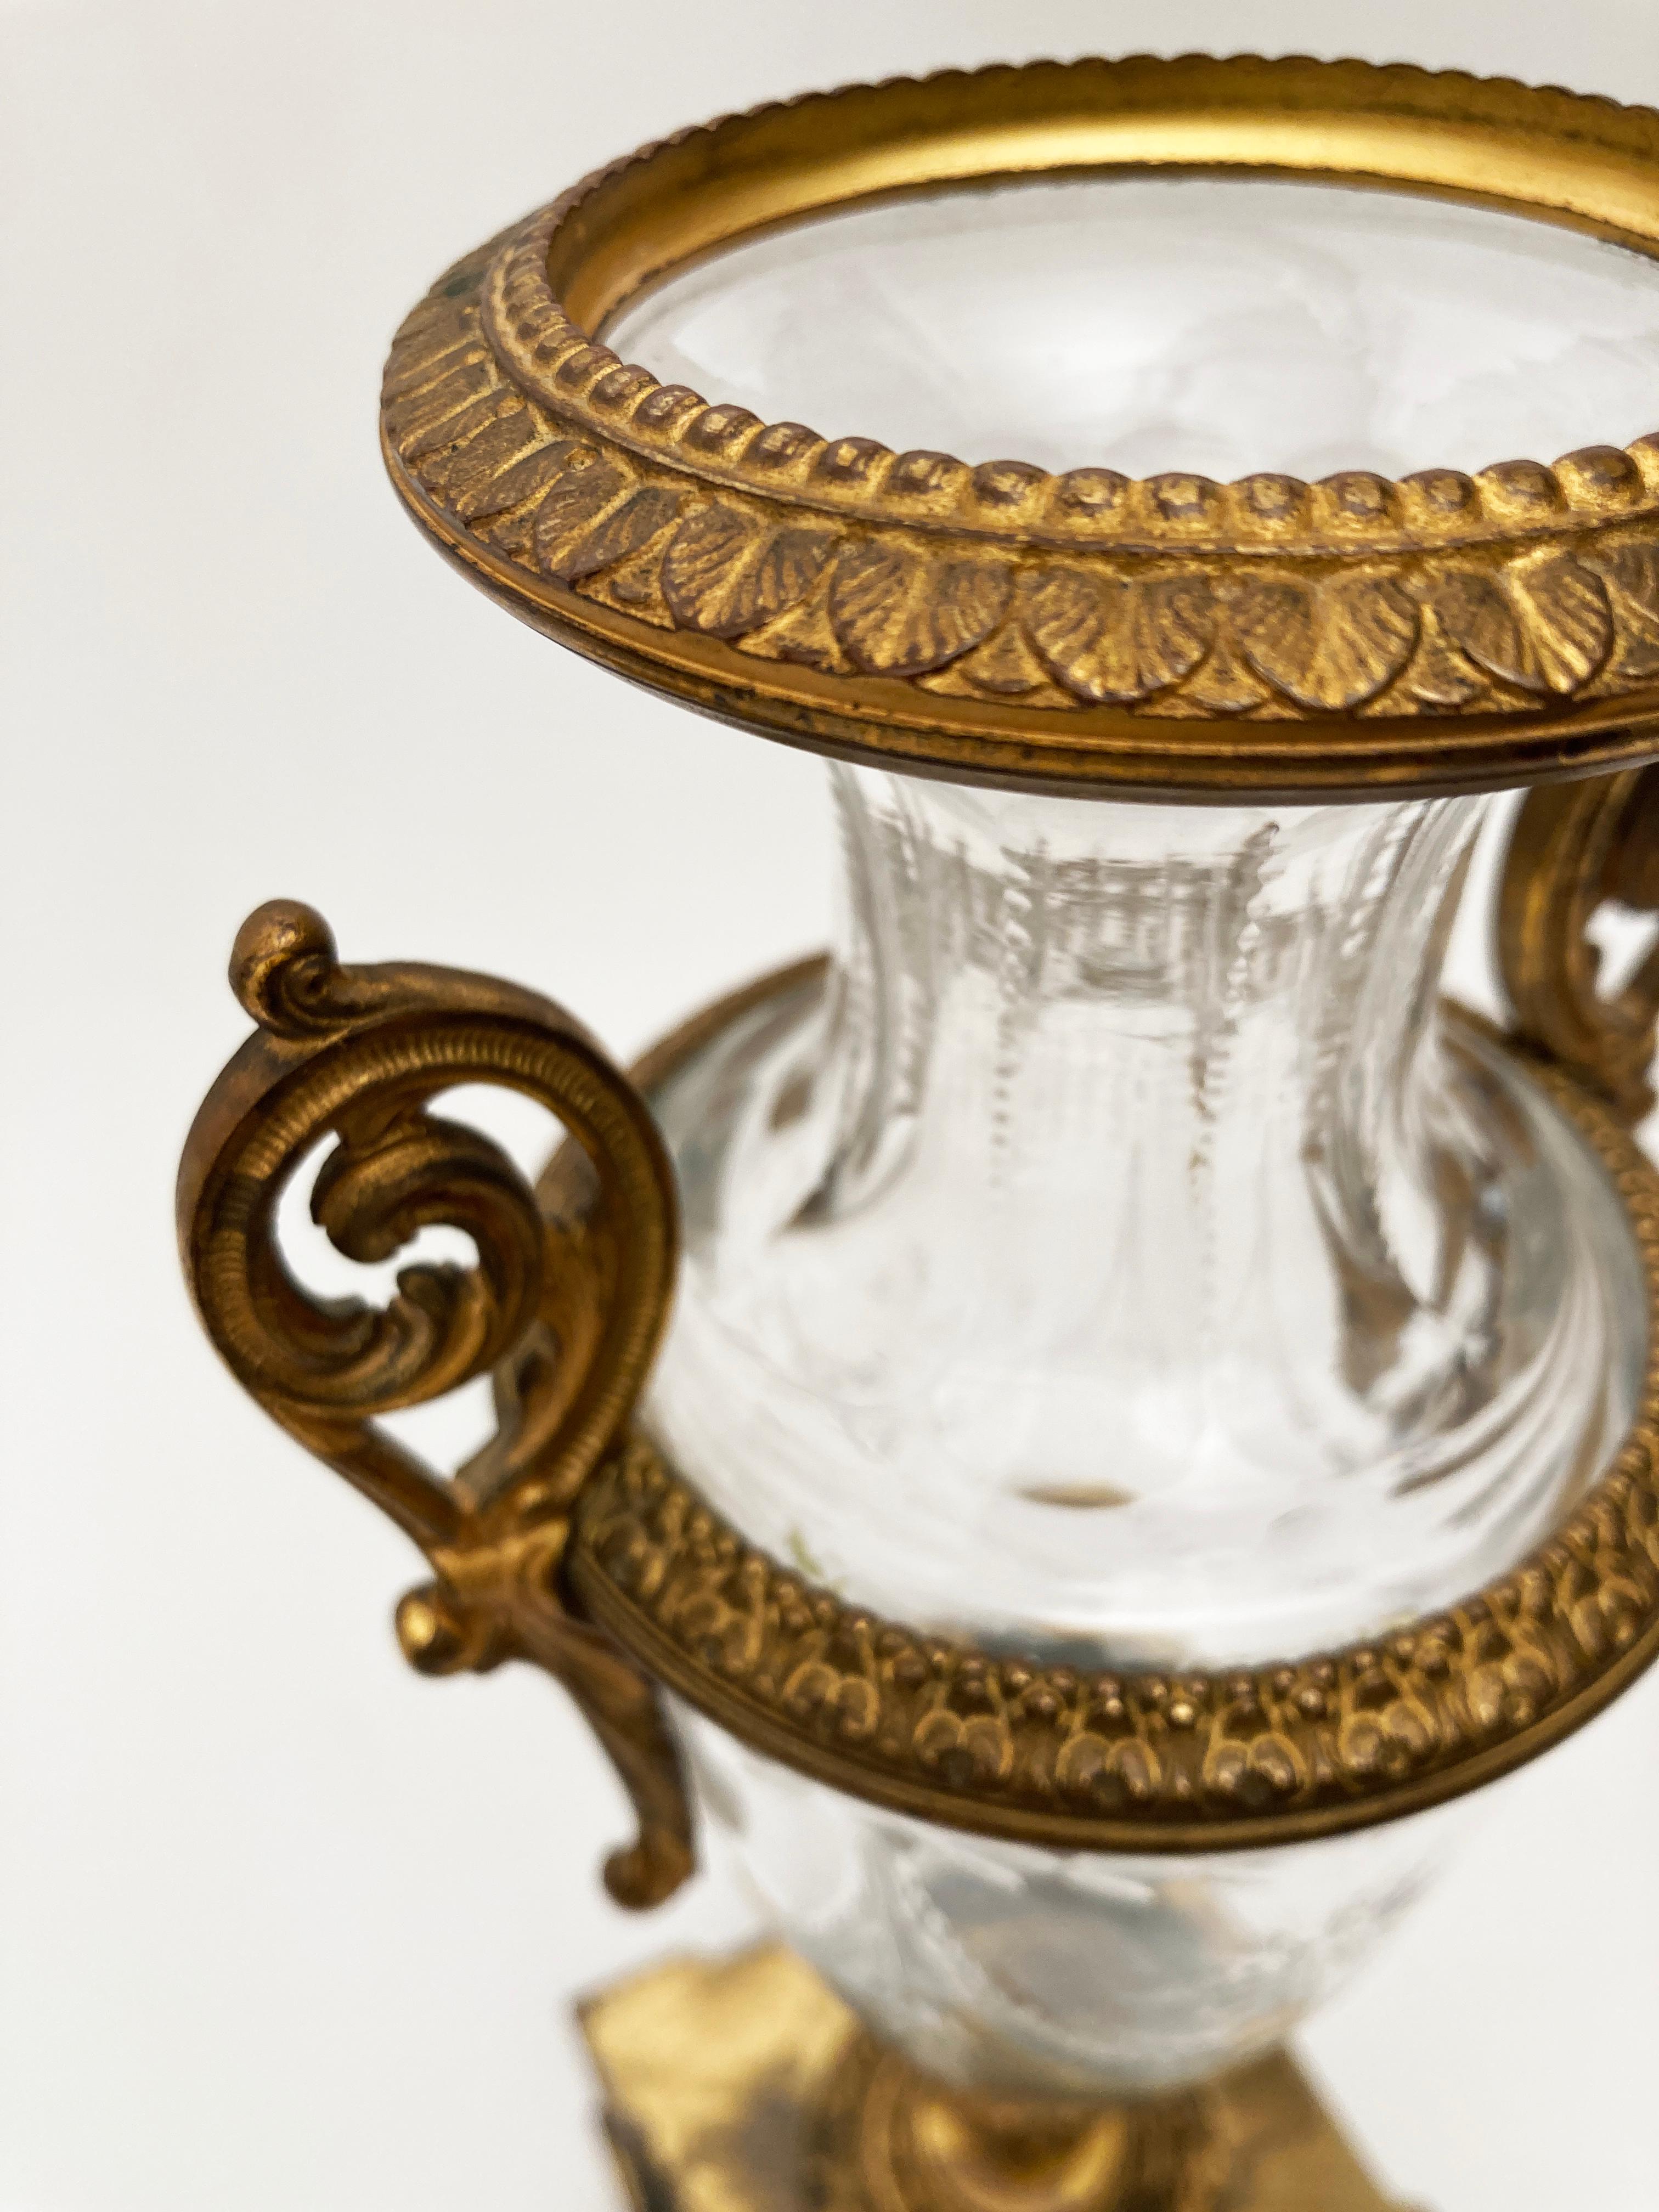 Die französischen Kunsthandwerker des 19. Jahrhunderts verstanden es, dauerhafte klassische Schönheit zu entwerfen. Dieses außergewöhnliche Paar französischer Urnen ist ein Beweis für die Meisterschaft, die in Design und Konstruktion steckt. Von der